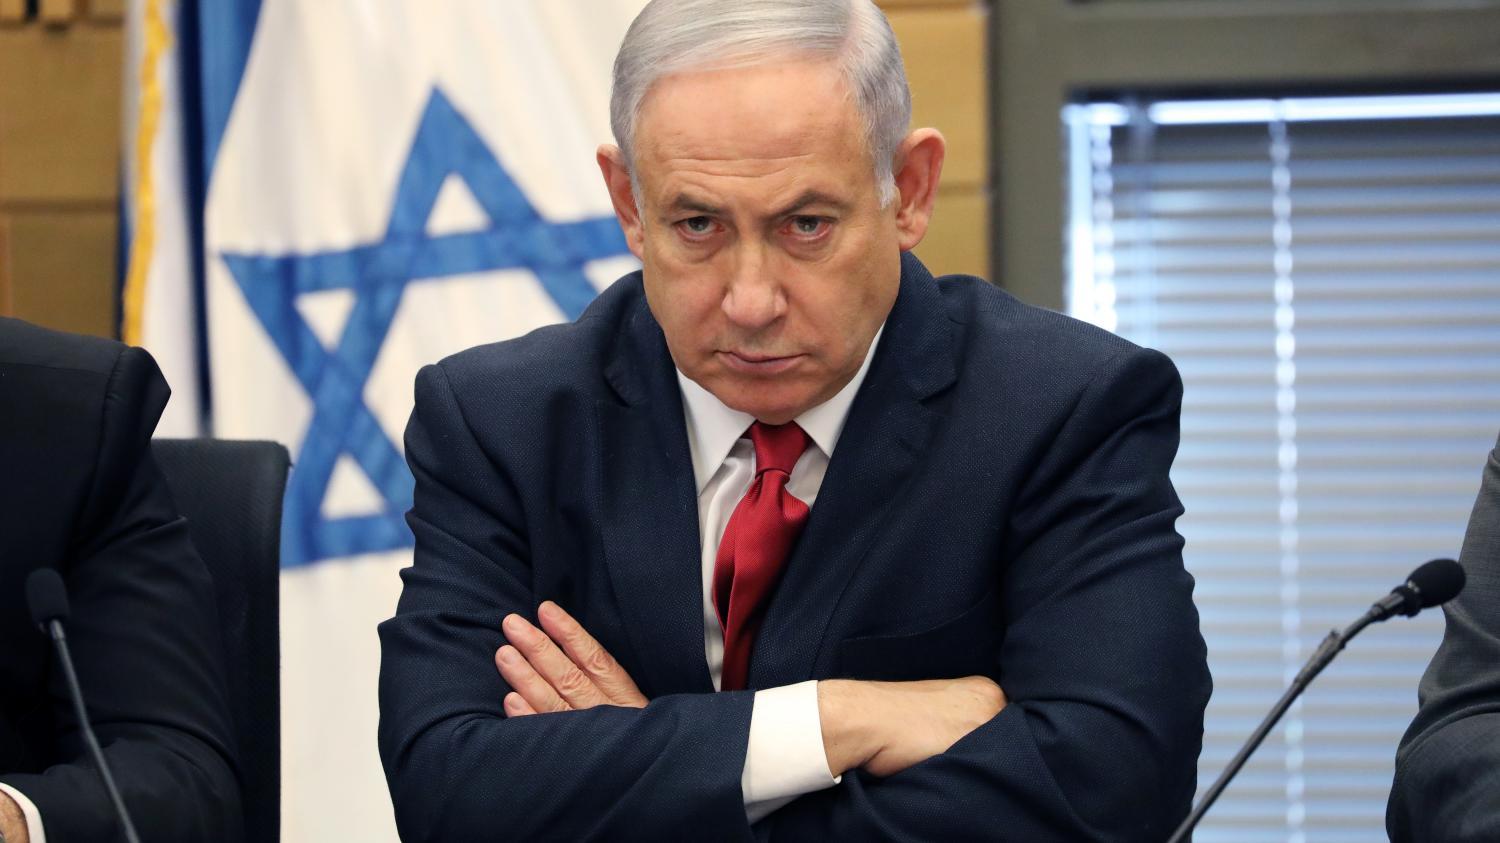 نتانیاهو در اتاق جراحی؛آخرین خبر از وضعیت جسمانی نخست وزیر اسرائیل!